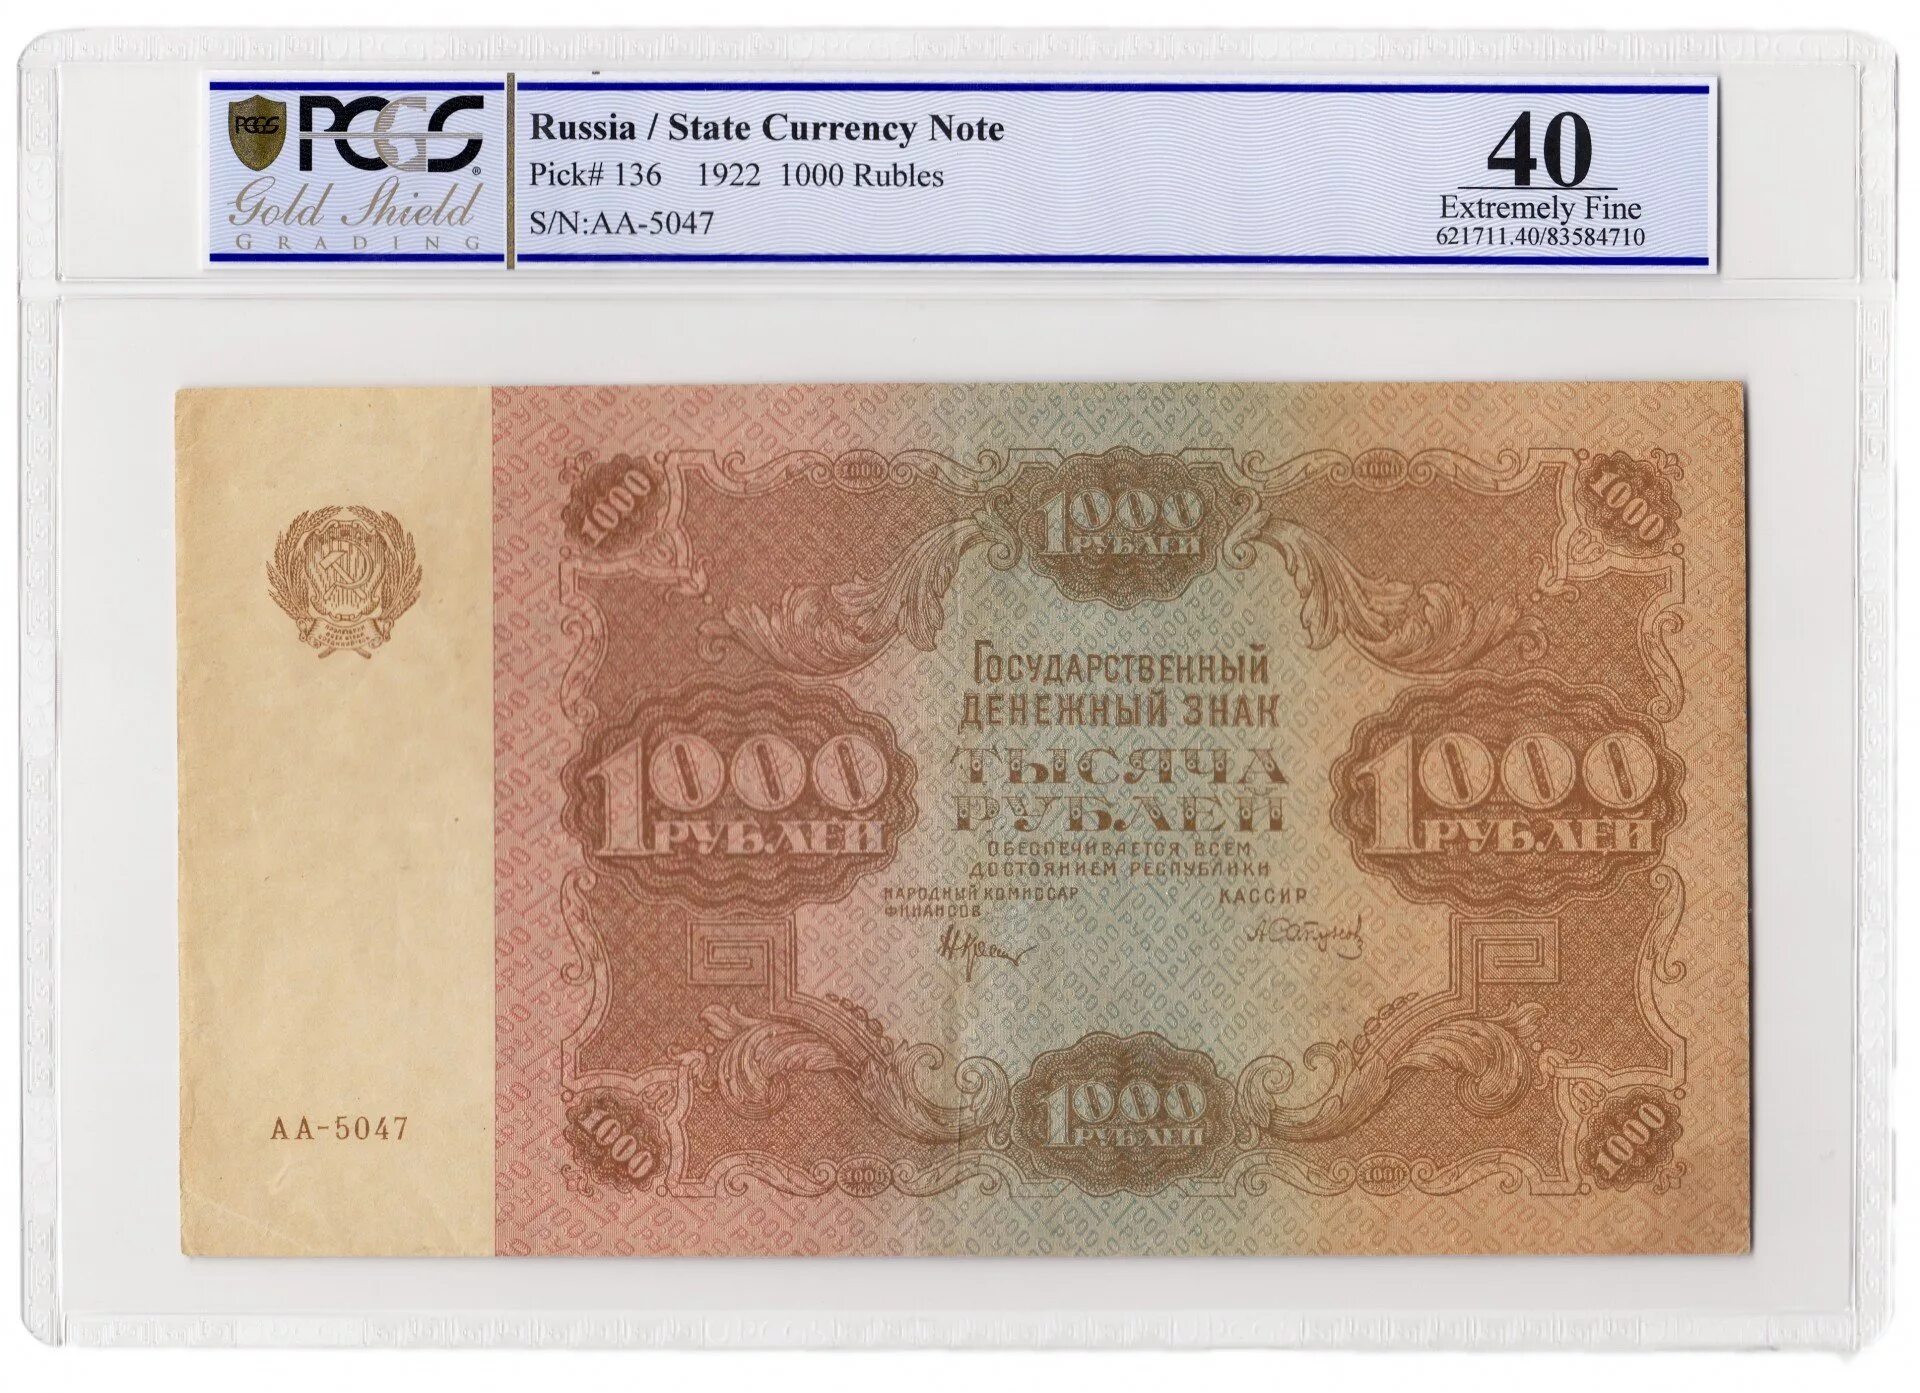 20 тысяч рублей в сумах. 1000 Рублей 1922. 1000 Рублей 1922 банкнота. 50 Рублей 1922 слаб. Тысяча рублей золотом 1922.